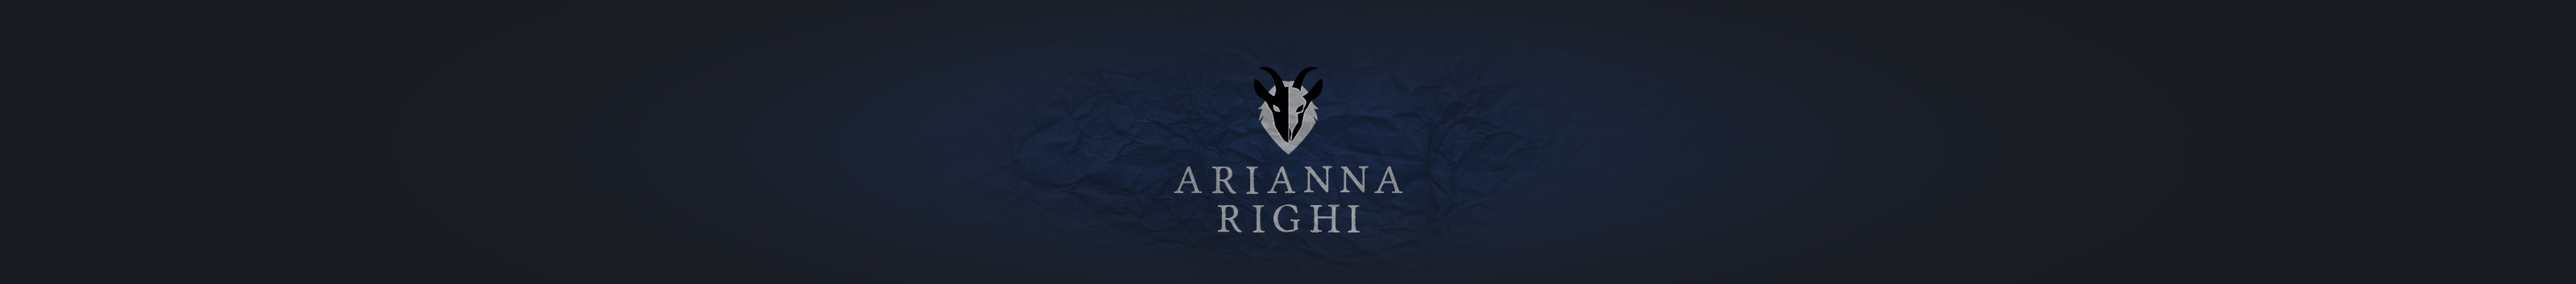 Banner de perfil de Arianna Righi